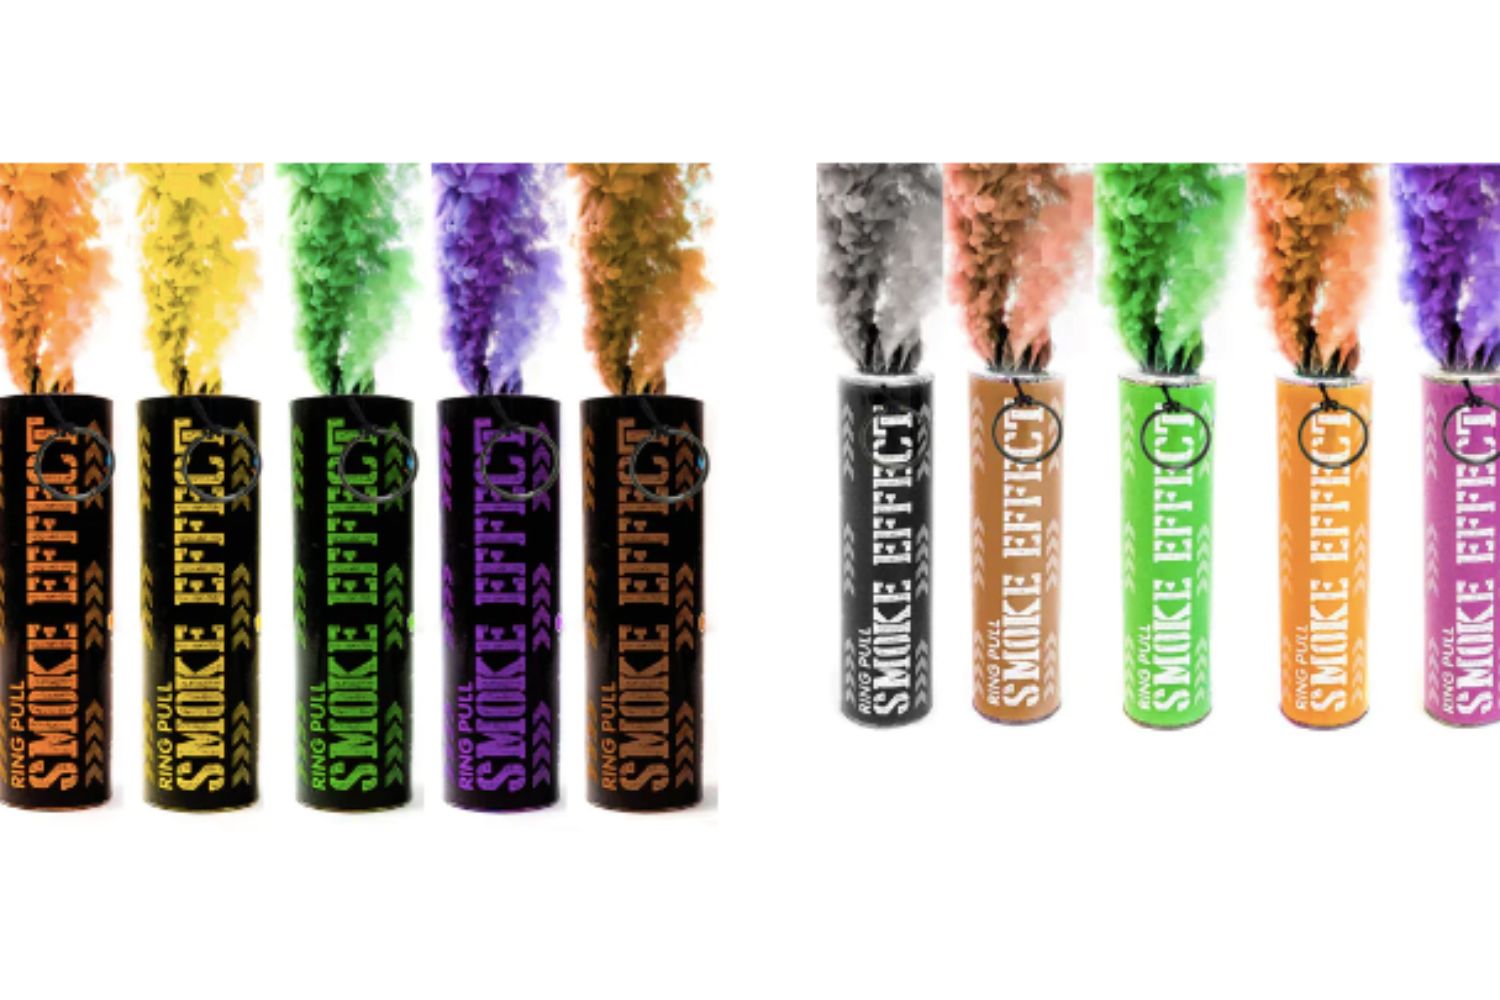 smoke bomb product from Smoke Effect